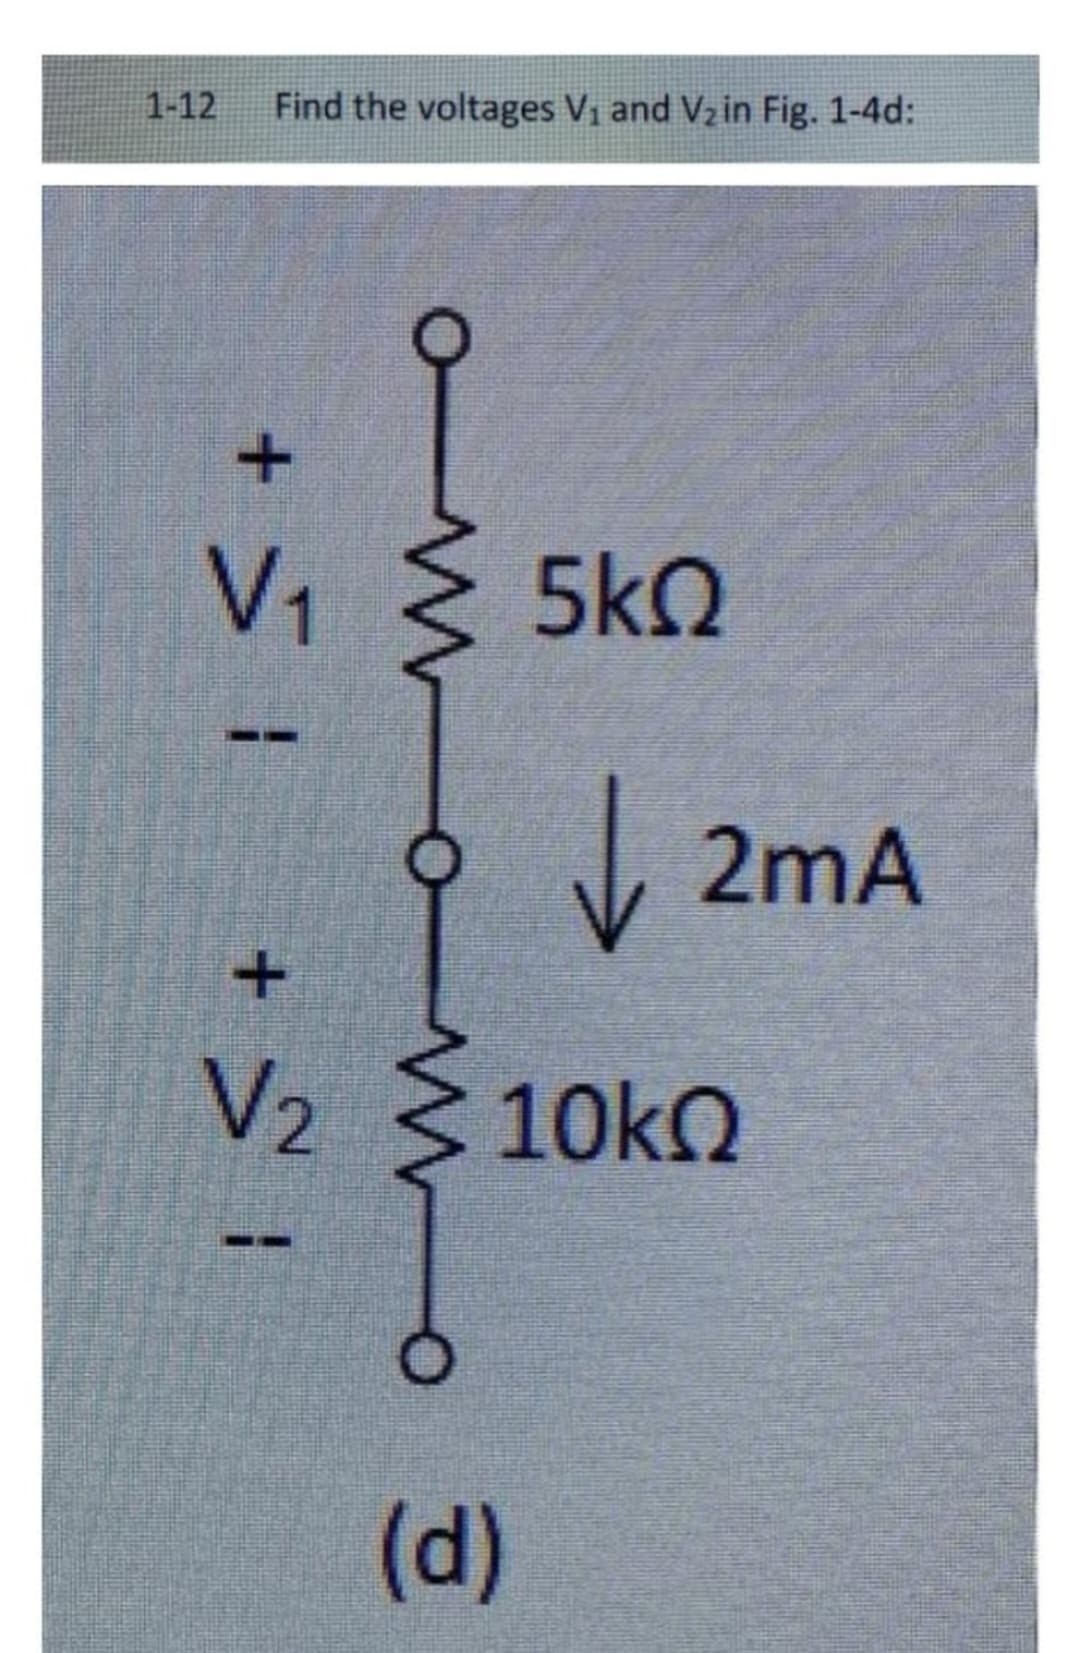 1-12 Find the voltages V₁ and V₂ in Fig. 1-4d:
+ > 1
om
V₁ < 5KQ
↓
(d)
2mA
+
V₂ <10kQ